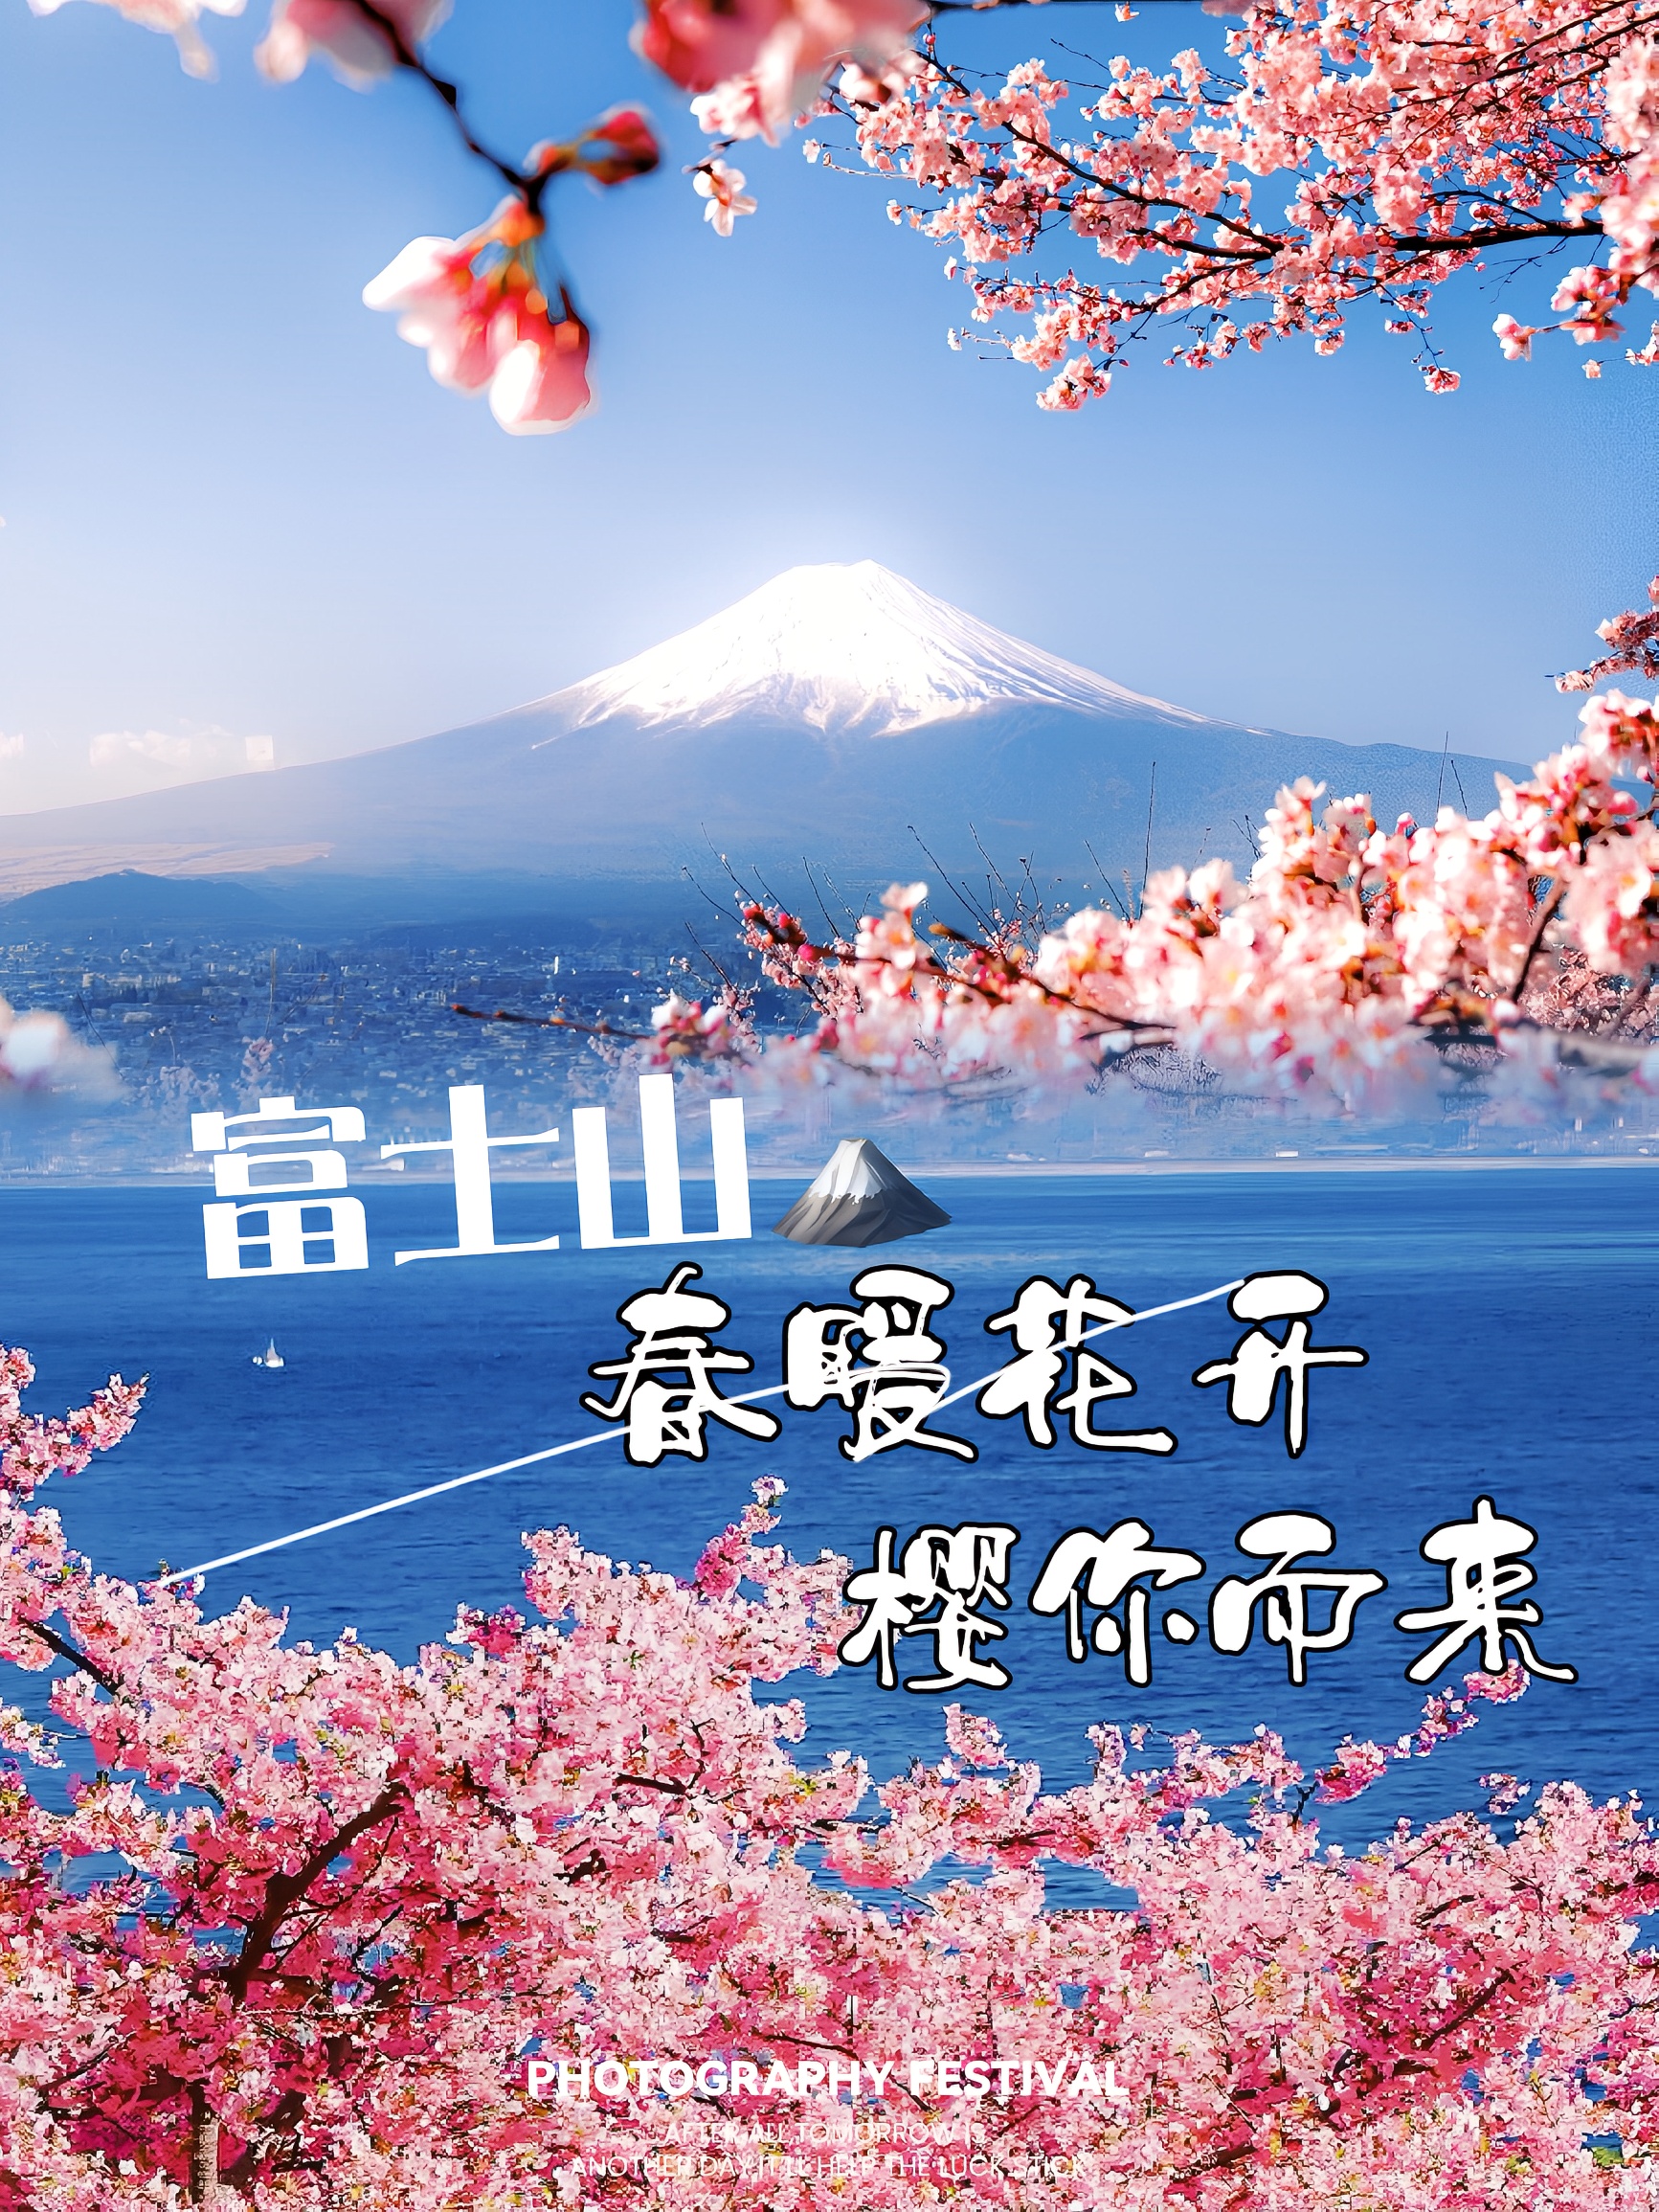 富士山赏樱攻略来啦❗️最美不过樱花雪🌸